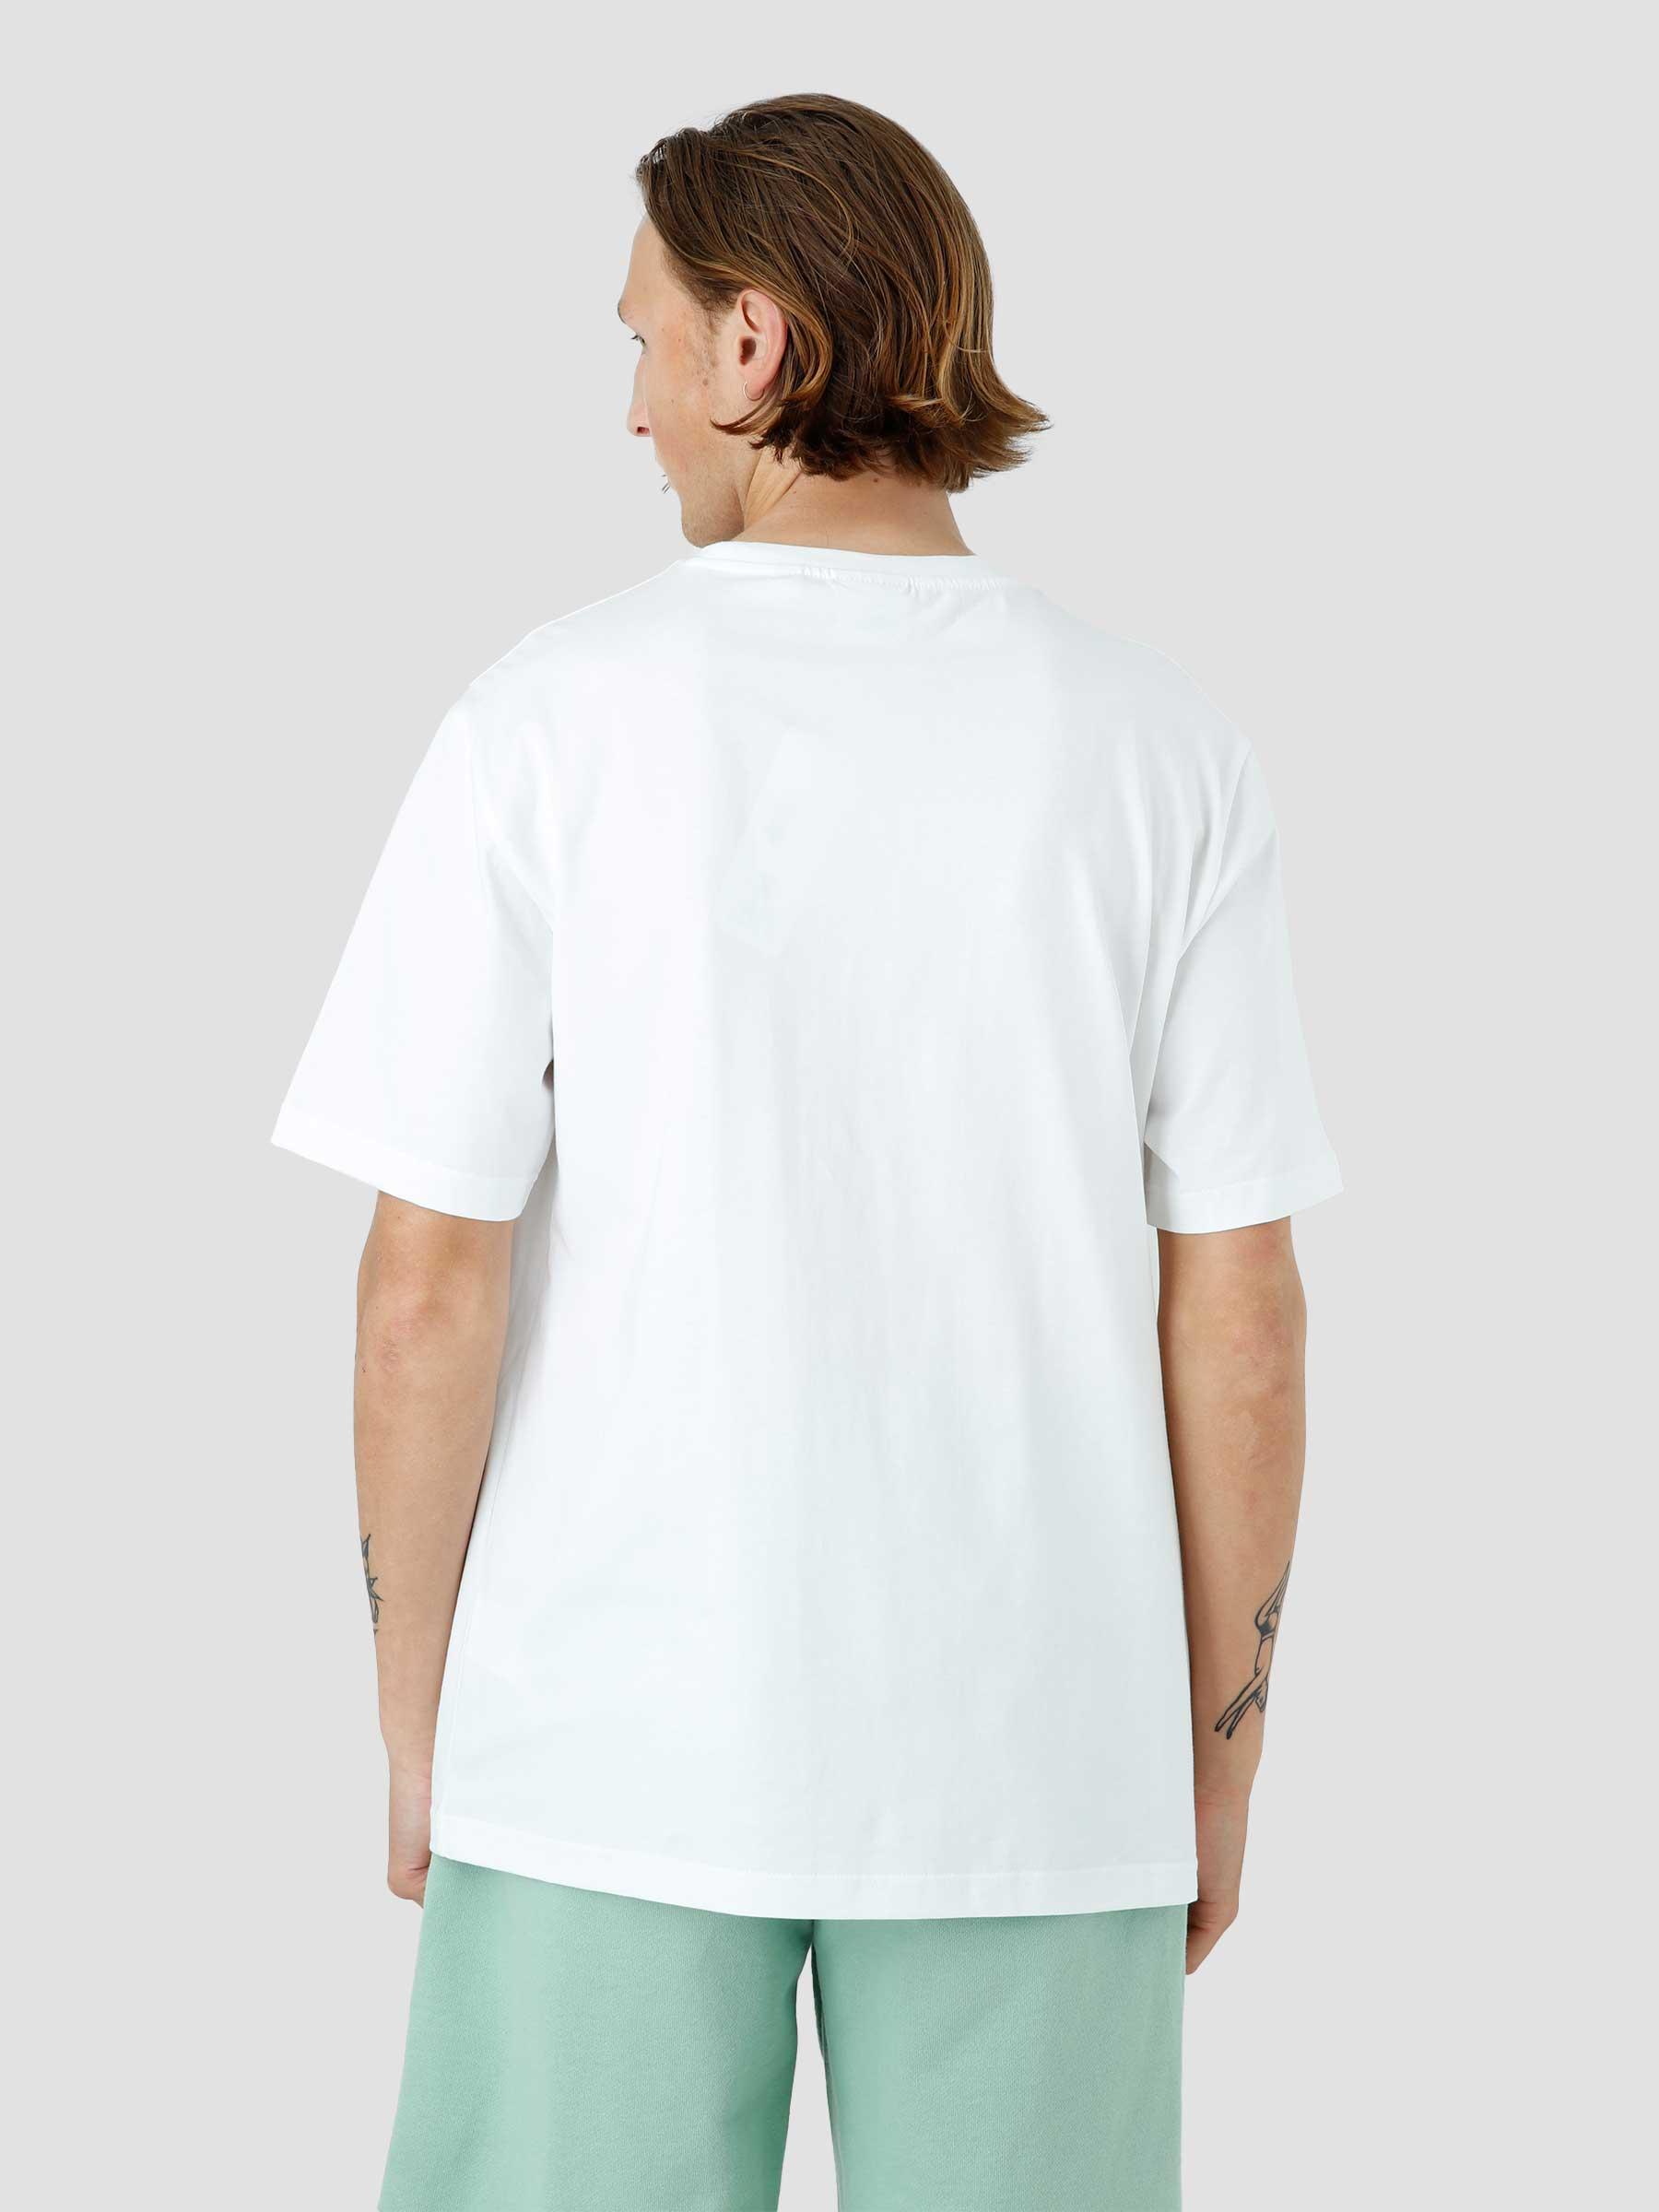 Rener T-shirt White 2213037